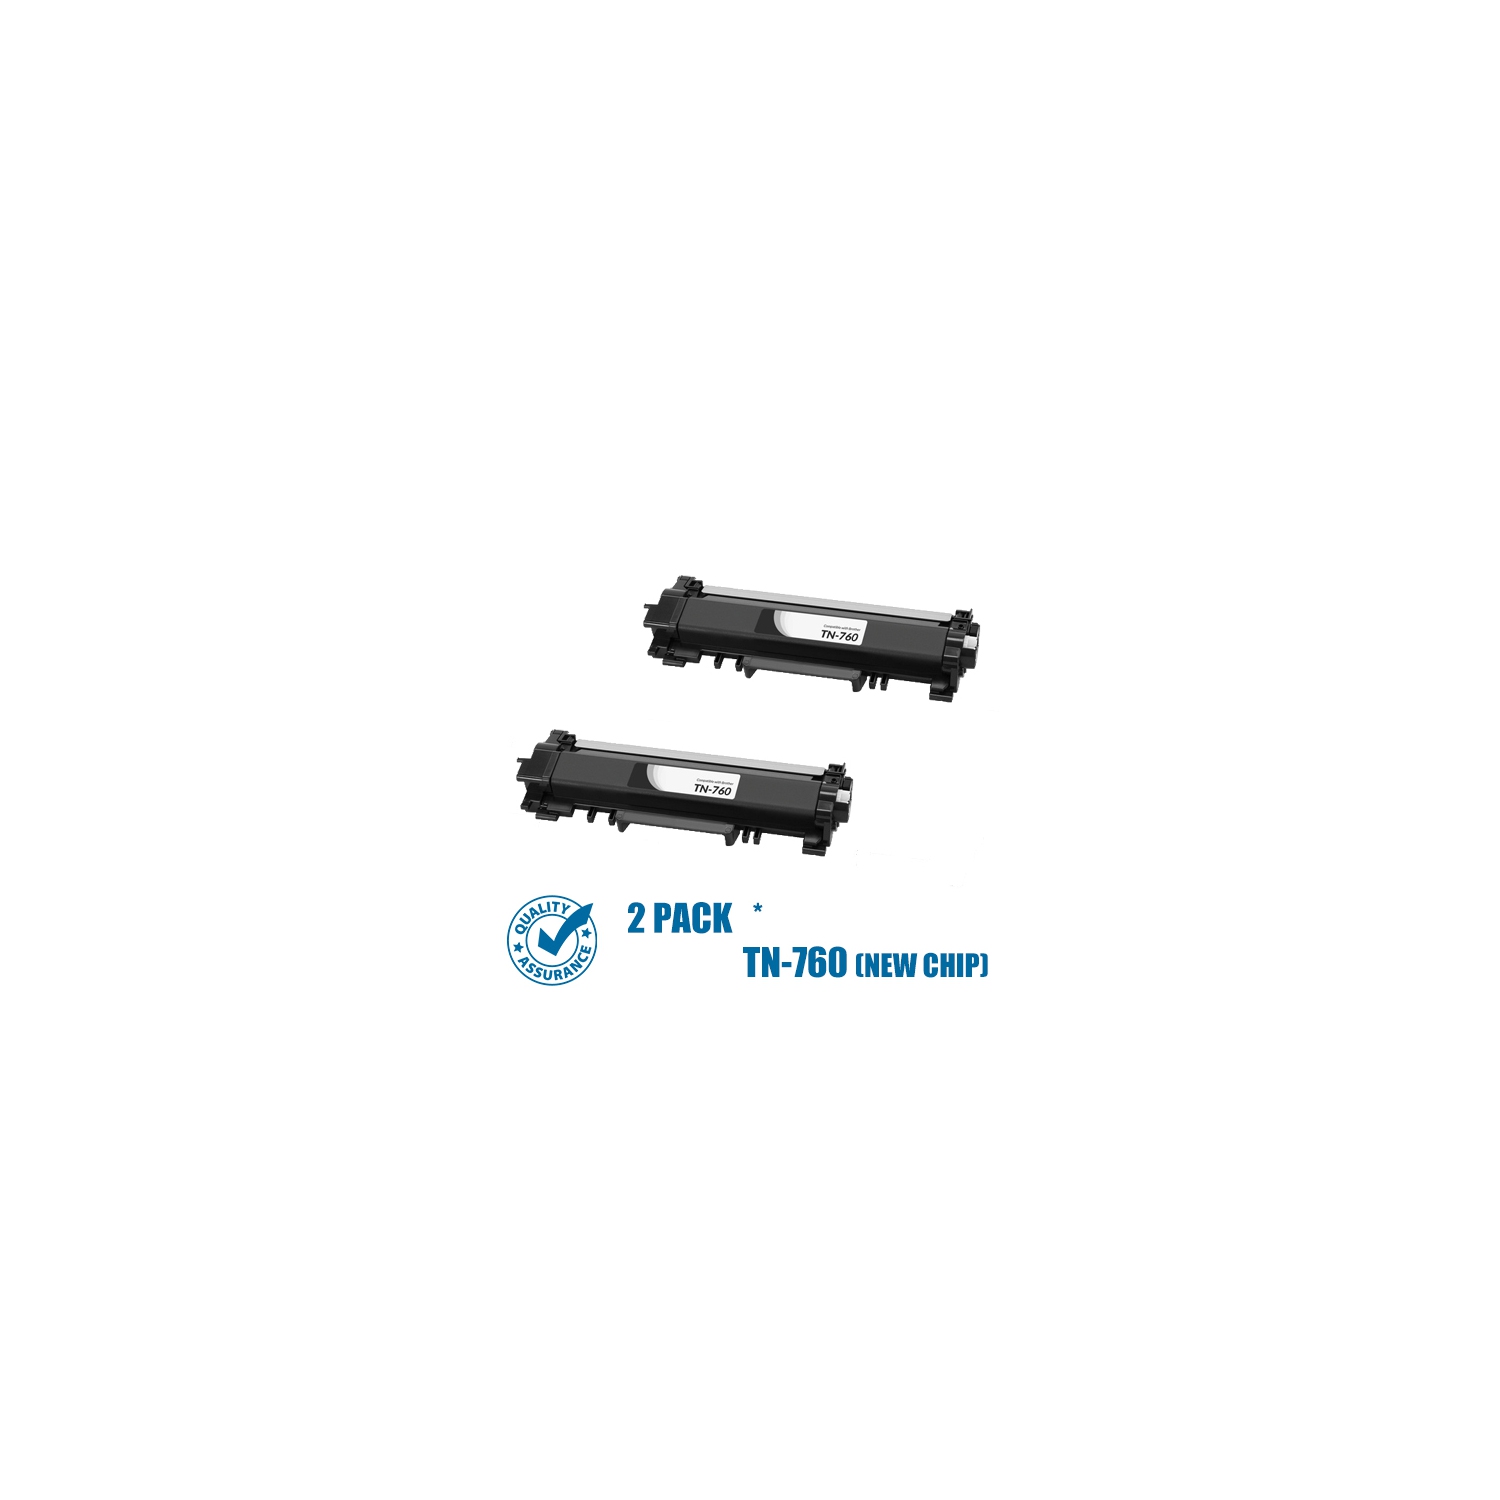 Printer Pro™ 2 Pack Brother TN760/TN-760/TN730/TN-730 (WITH CHIP) Black Toner Cartridge-Brother Printer MFC-L2730/L2390/L2370